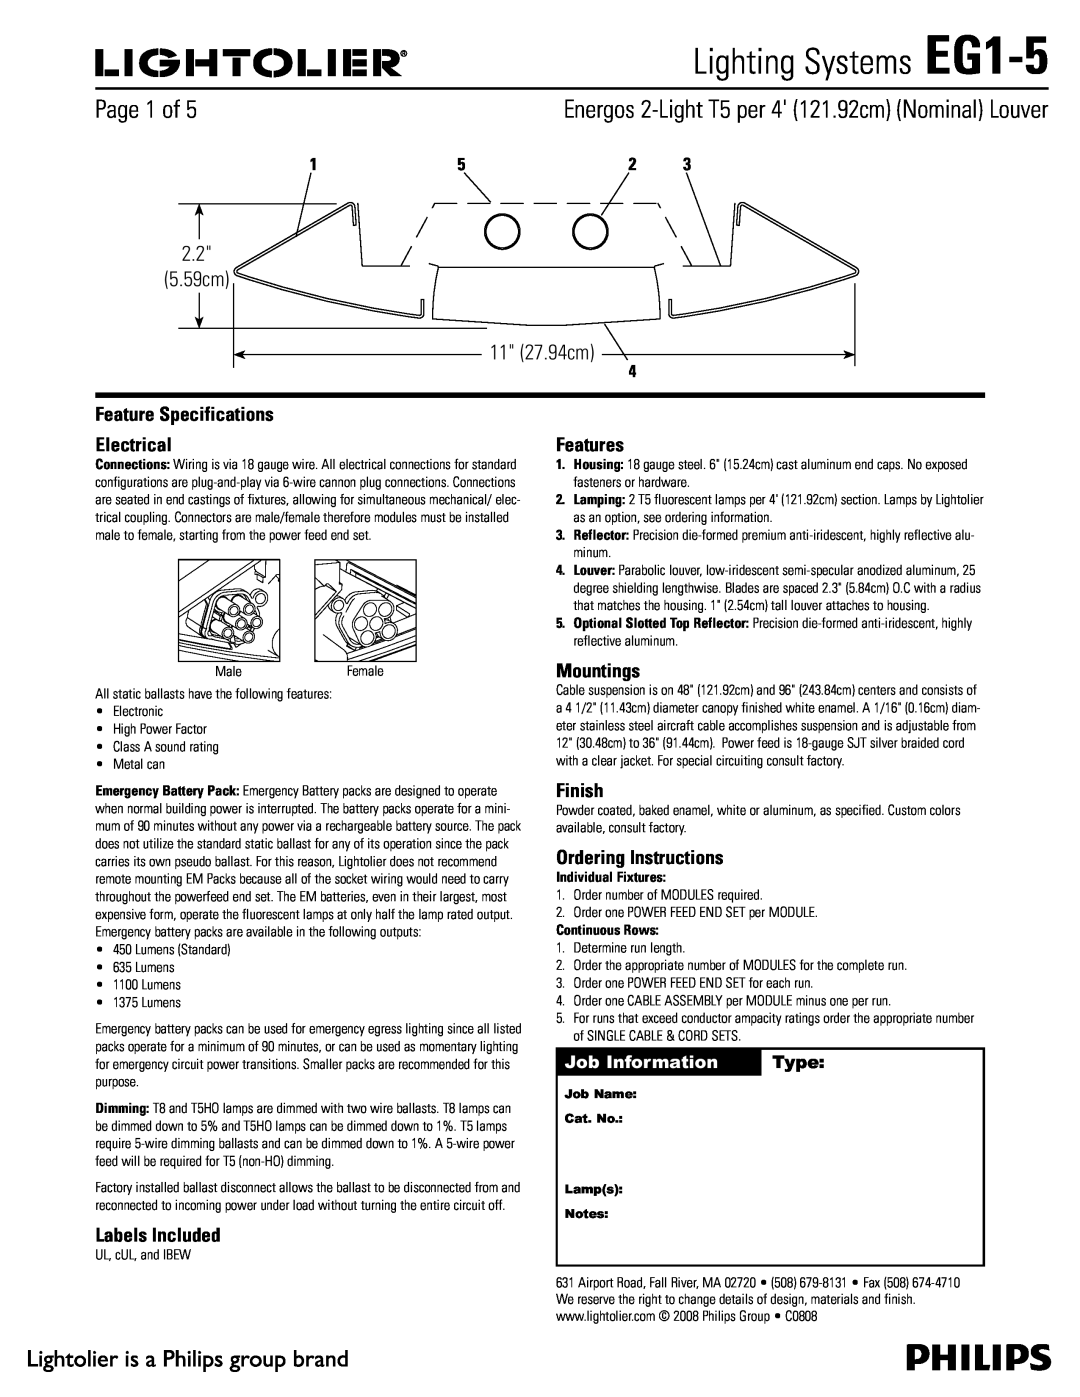 Lightolier specifications Lighting Systems EG1-5,  Dn  Dn, Job Information, Type 